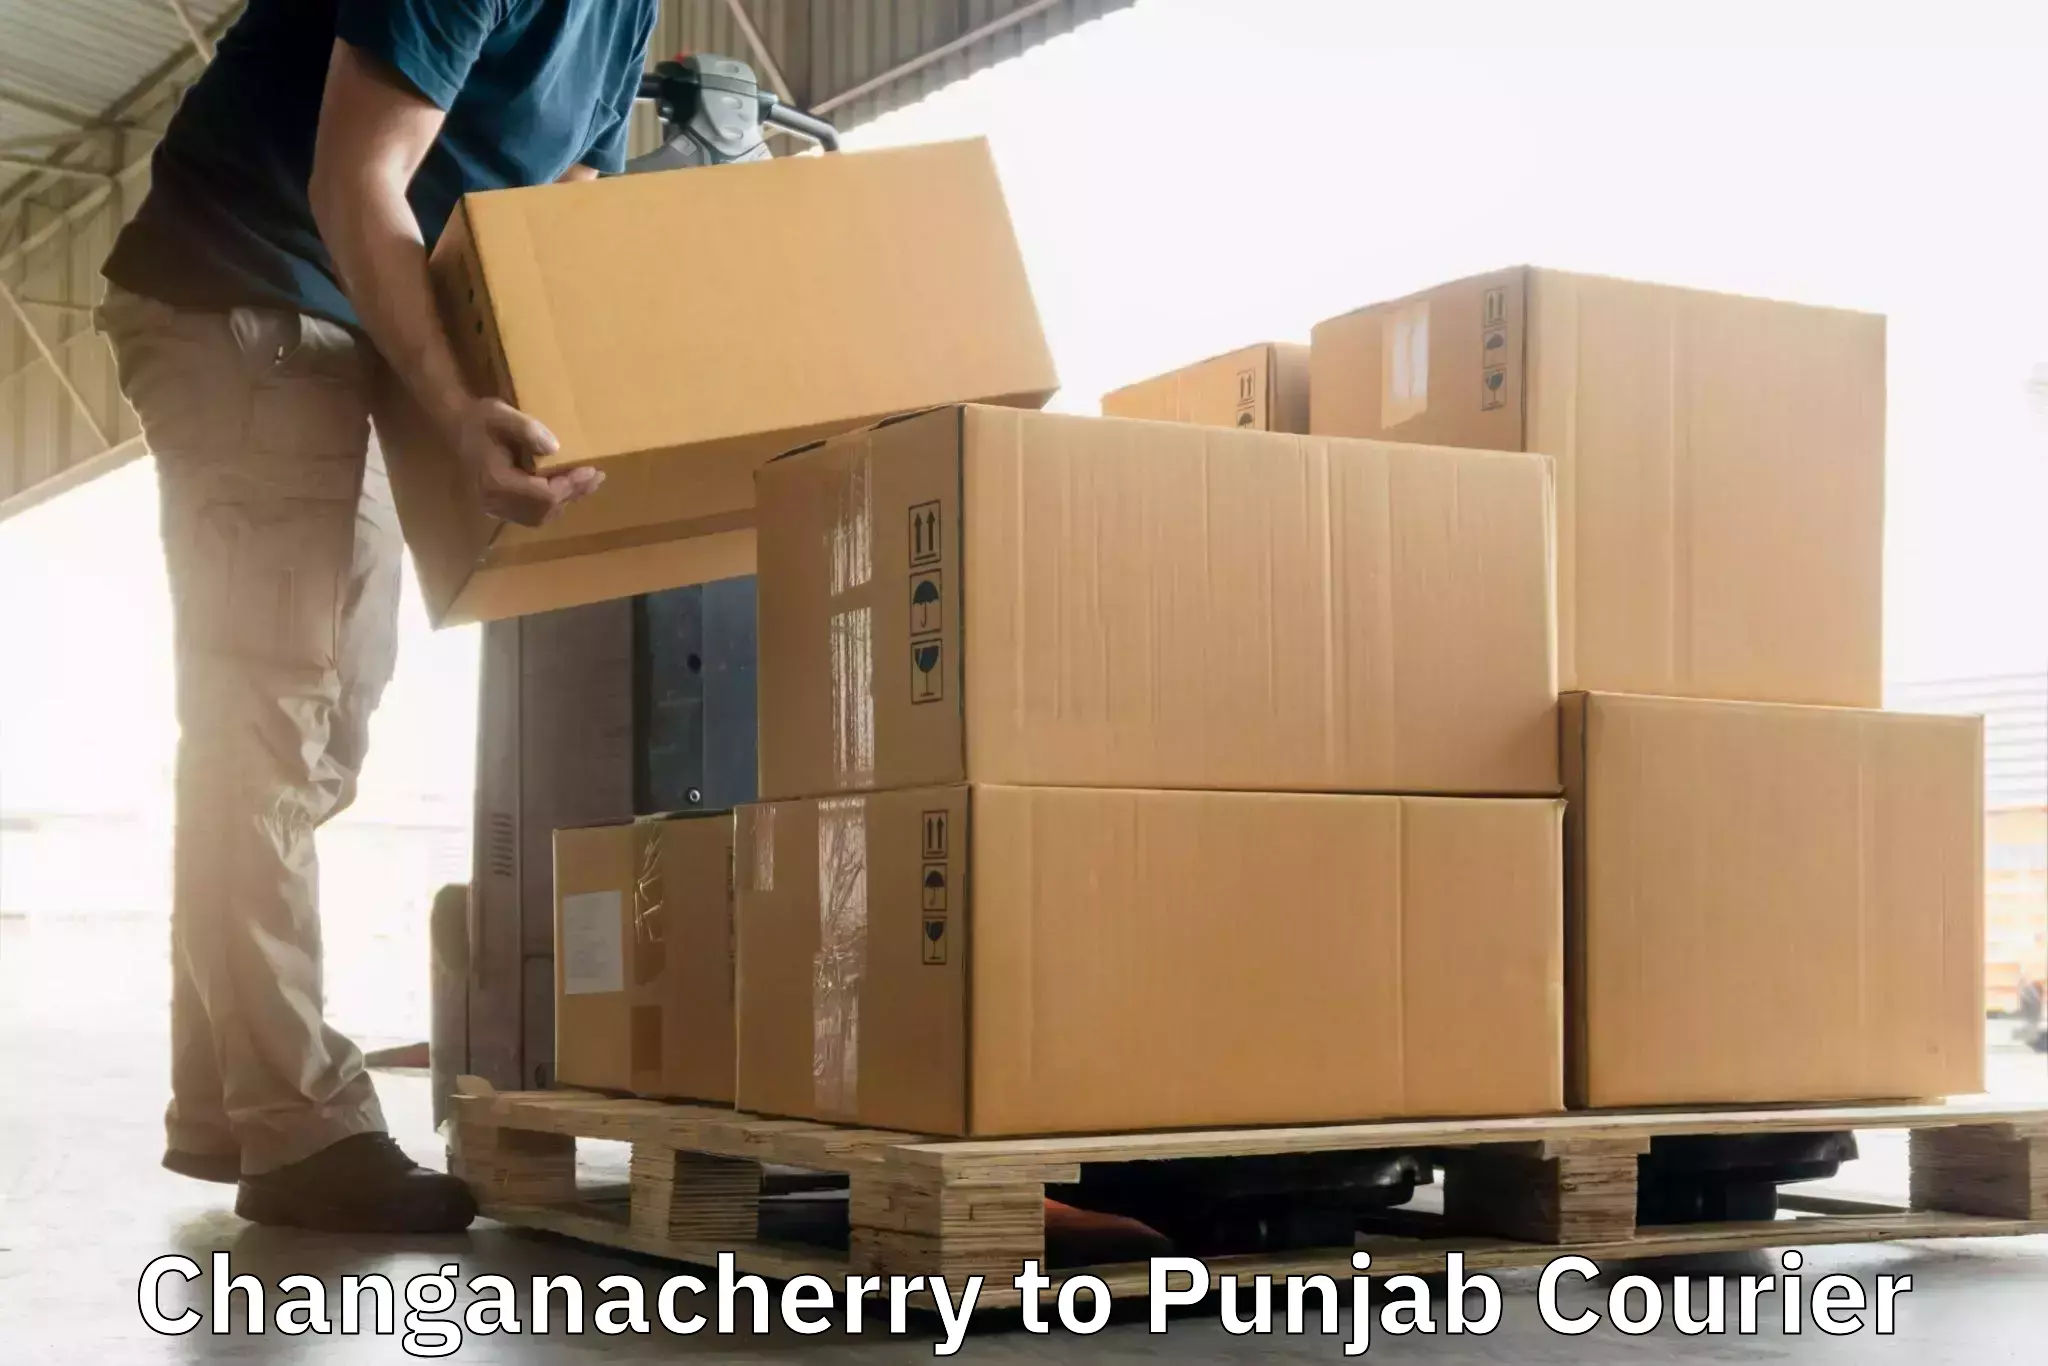 Efficient freight service Changanacherry to Gurdaspur